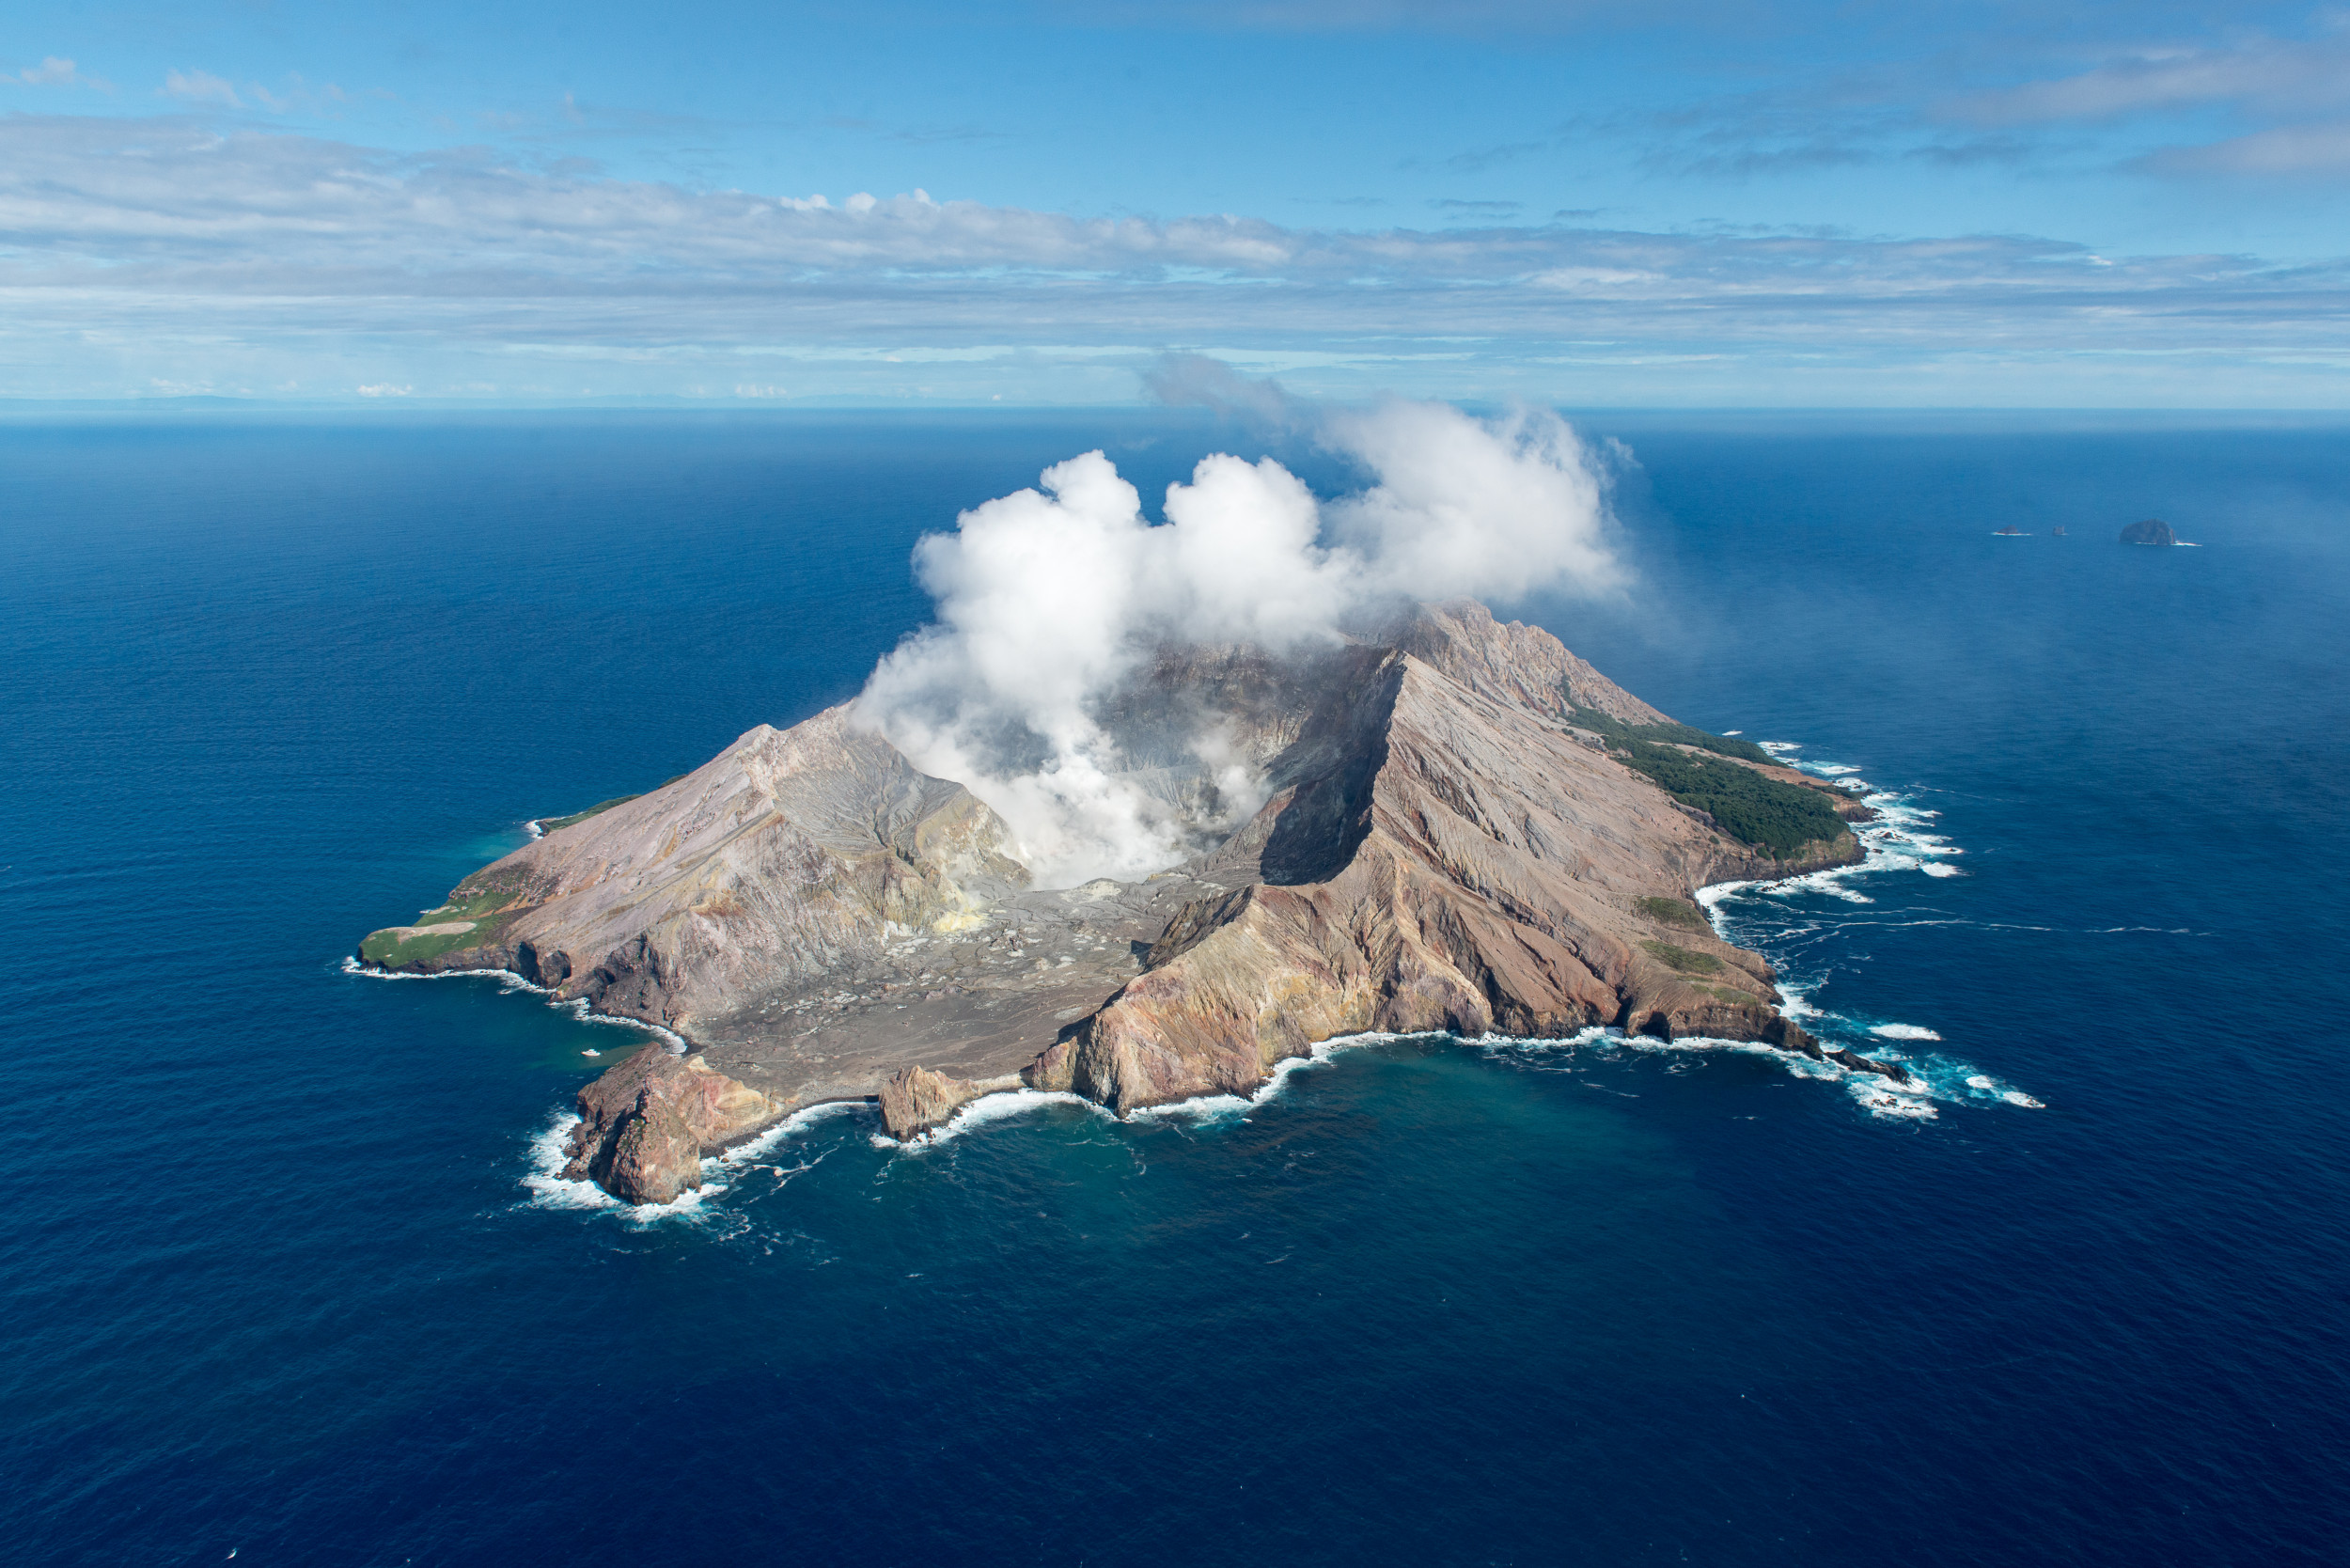 Volcano island. Вулкан Уайт-Айленд. Вулканический остров Уайт-Айленд. Остров Уайт новая Зеландия. Стромболи вулкан.